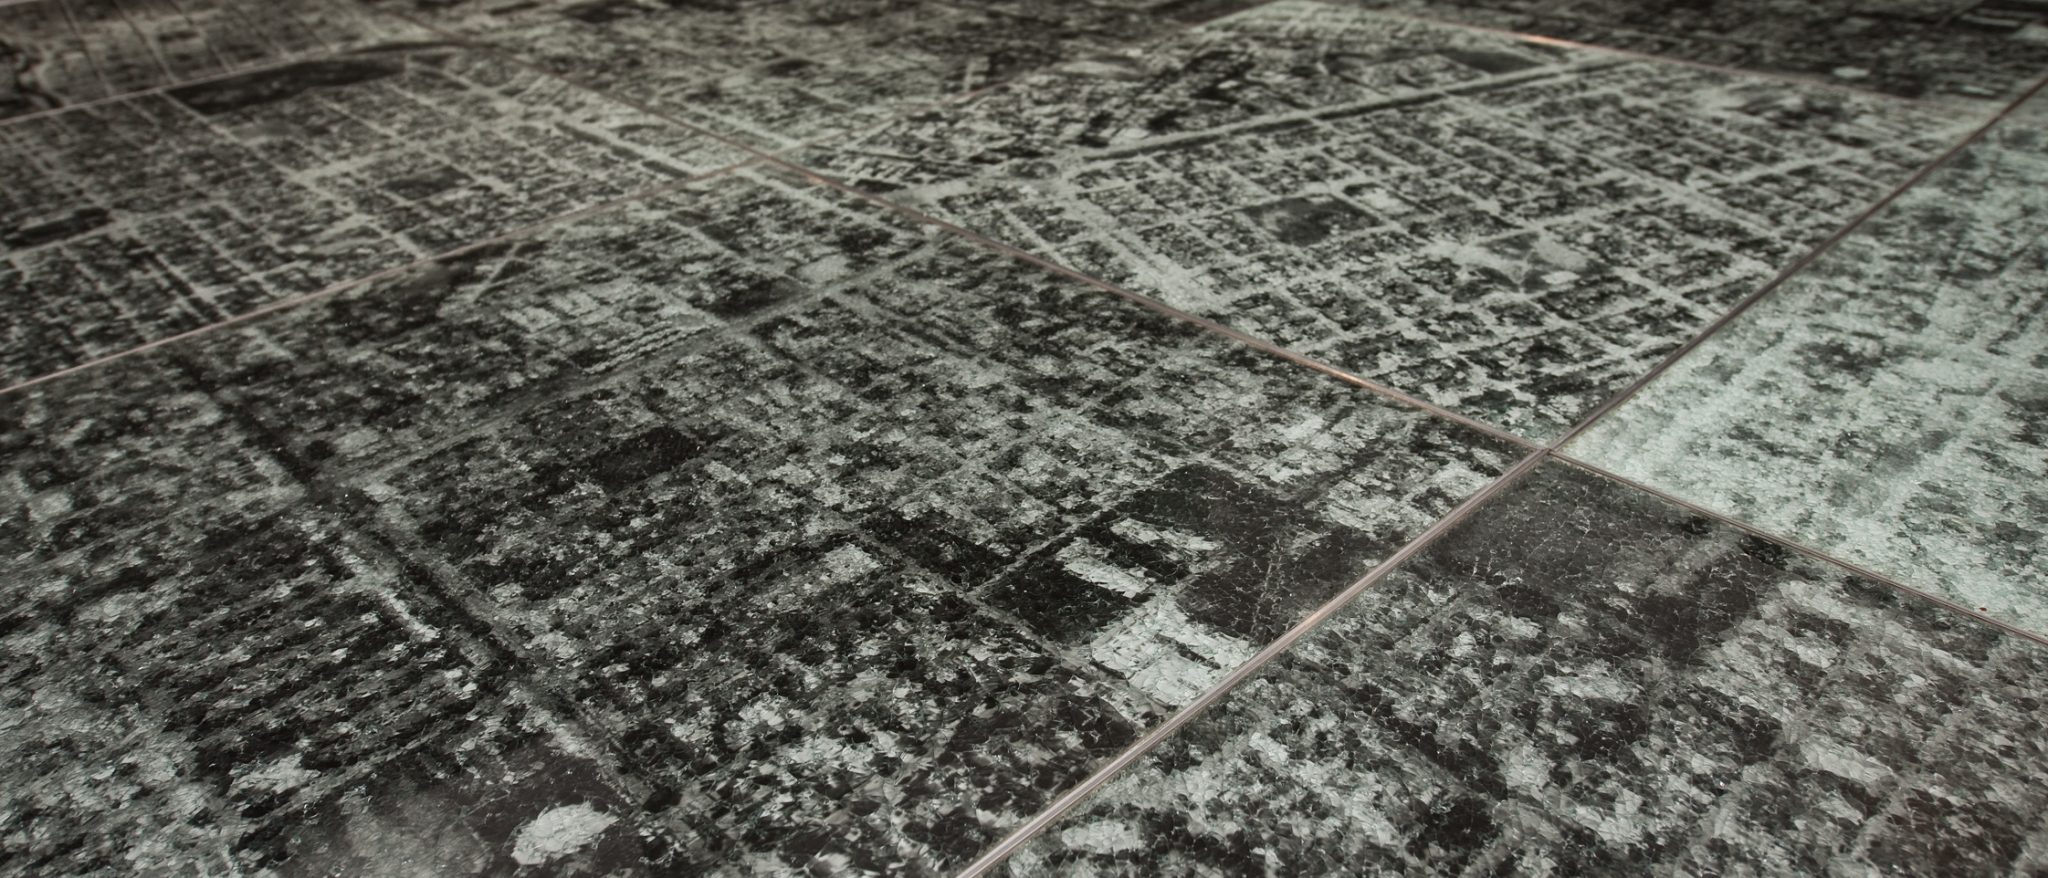 Fotografía aérea en blanco y negro de una ciudad, dividida en segmentos cuadrados colocados juntos en una cuadrilla sin orden pre-establecido.